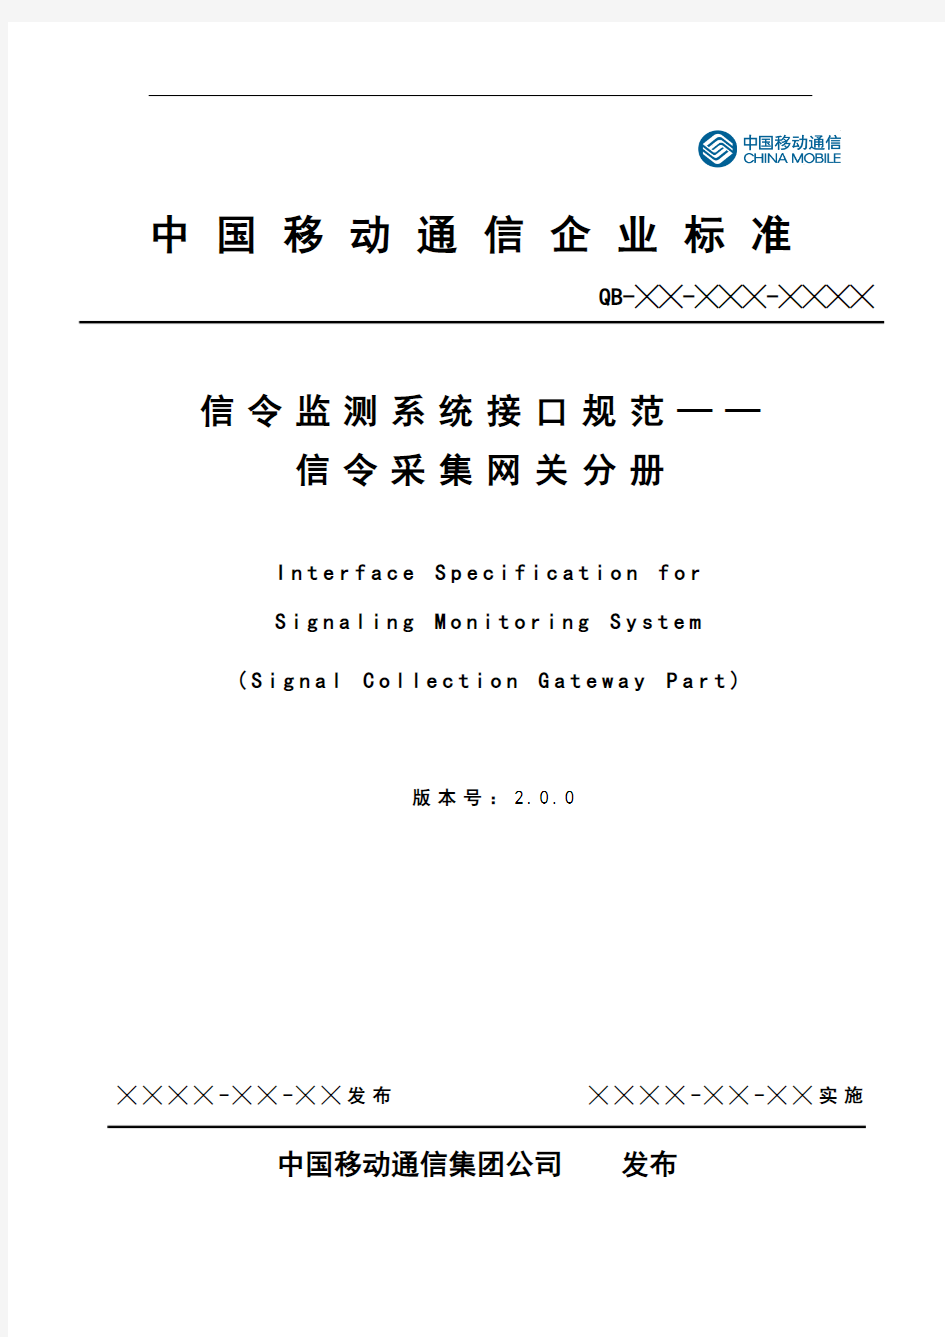 中国移动信令监测系统接口规范信令采集网关分册 v2.0.0